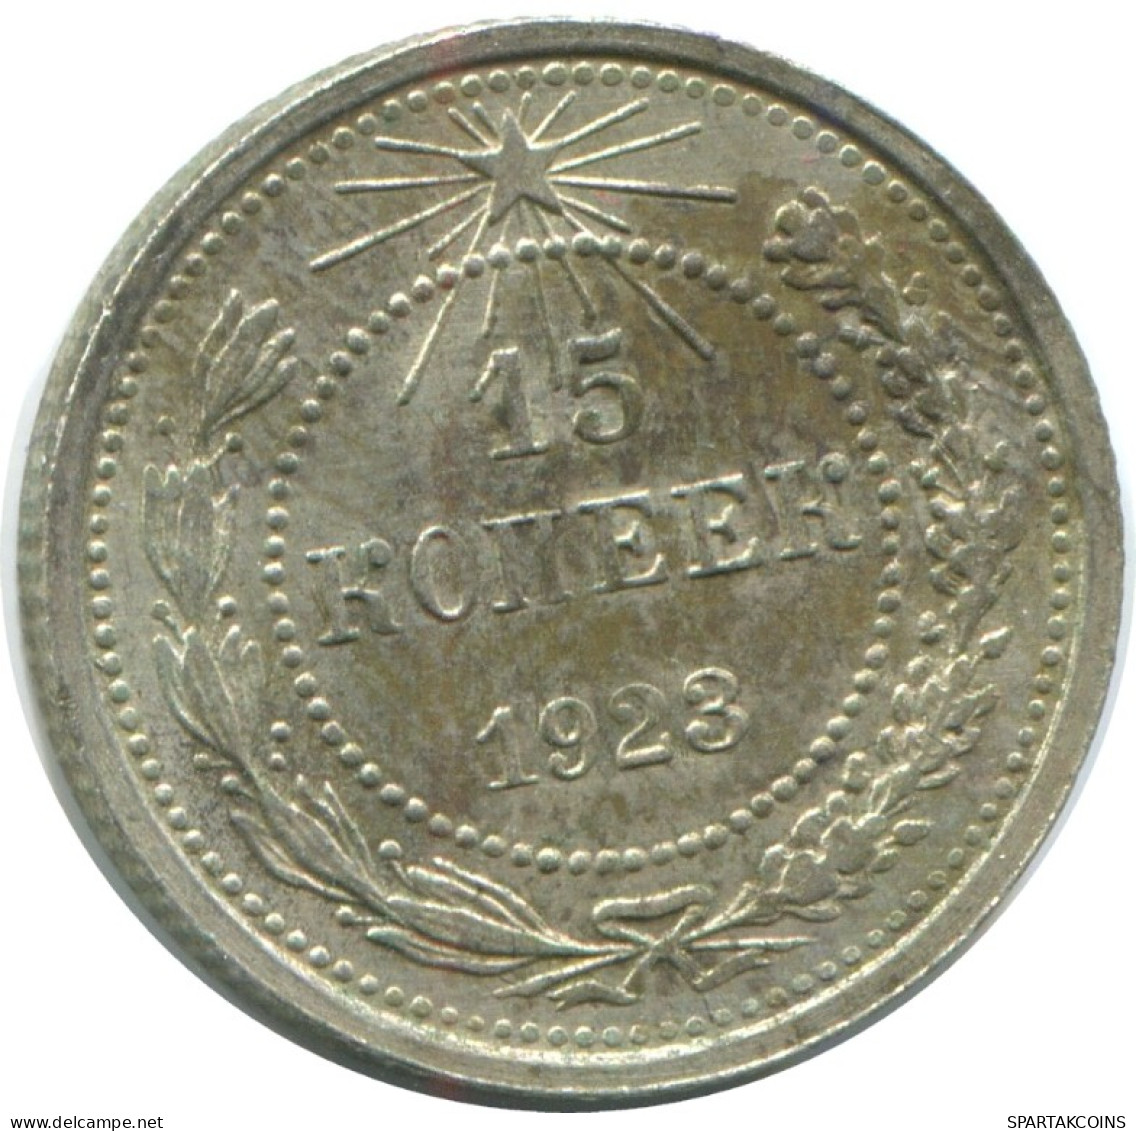 15 KOPEKS 1923 RUSSLAND RUSSIA RSFSR SILBER Münze HIGH GRADE #AF087.4.D.A - Russia